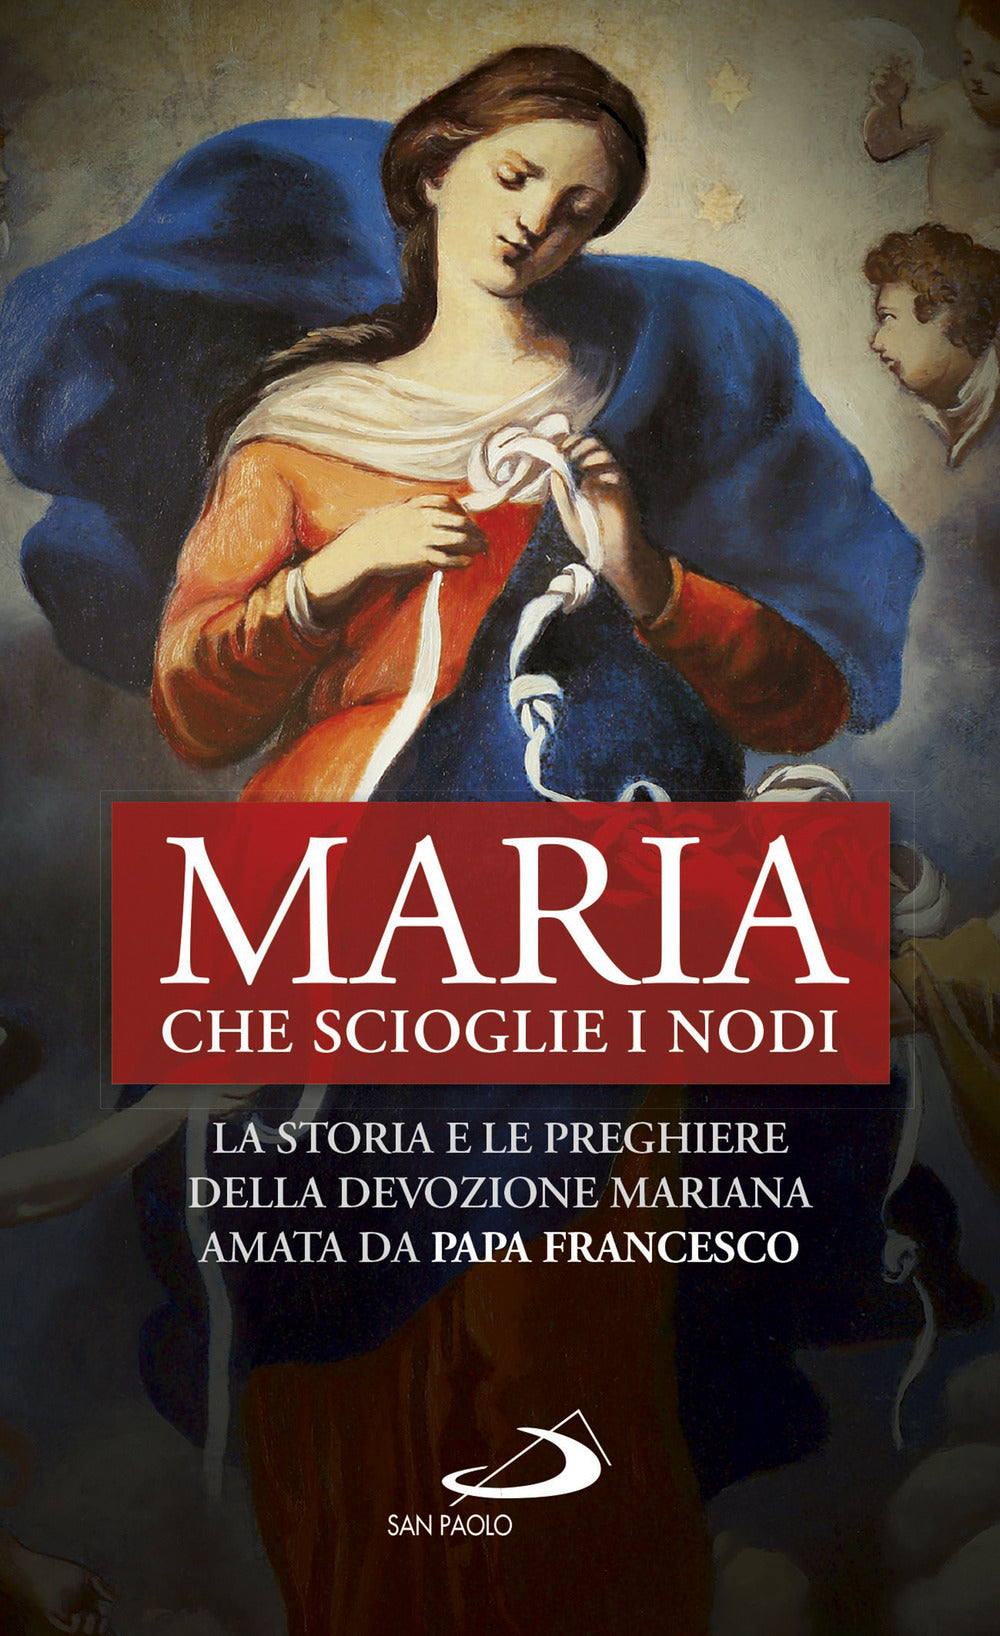 Maria che scioglie i nodi. La storia e la preghiera della devozione mariana diffusa da papa Francesco.